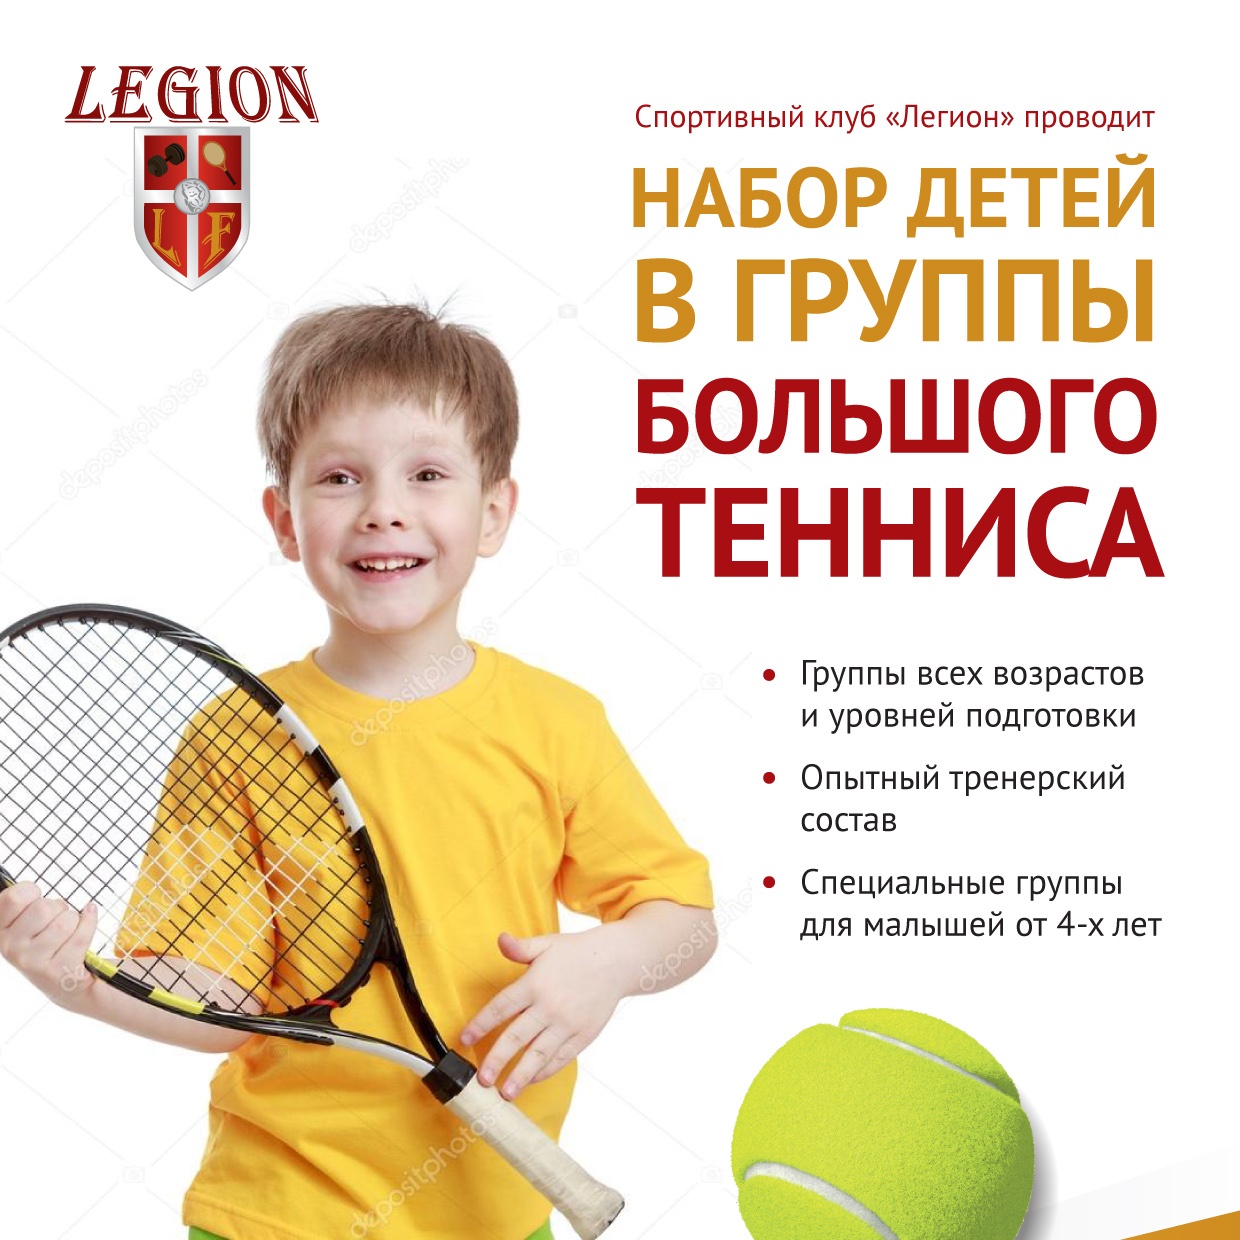 Набор детей в теннисную Академию Легион